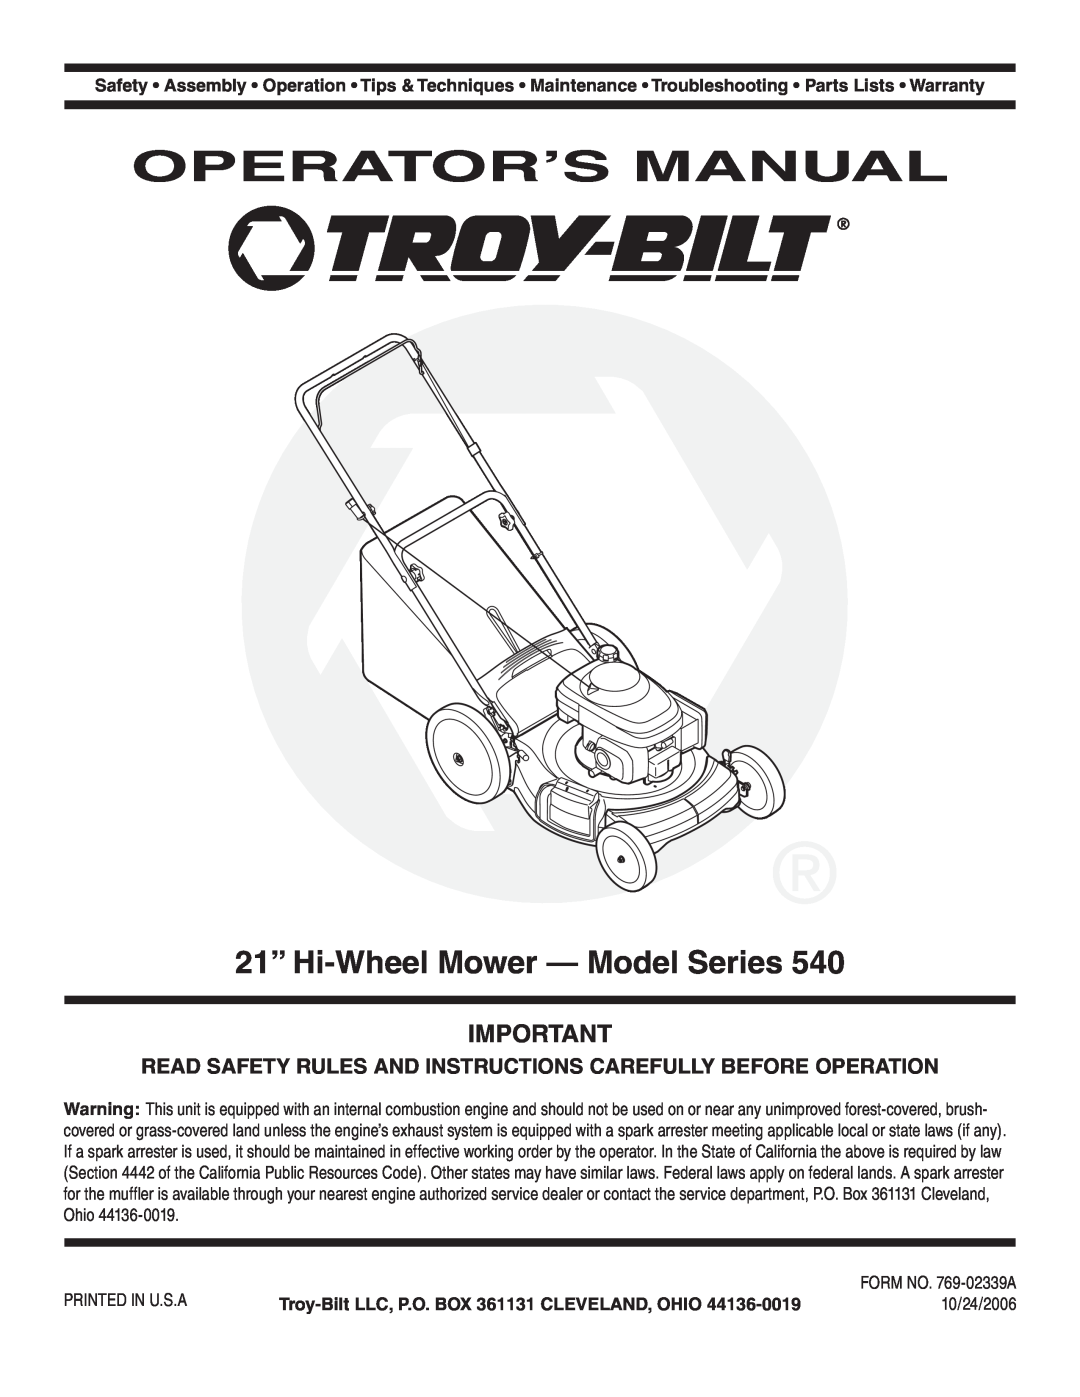 Troy-Bilt Series 540 manual Operator’S Manual, 21” Hi-Wheel Mower - Model Series, 10/24/2006 